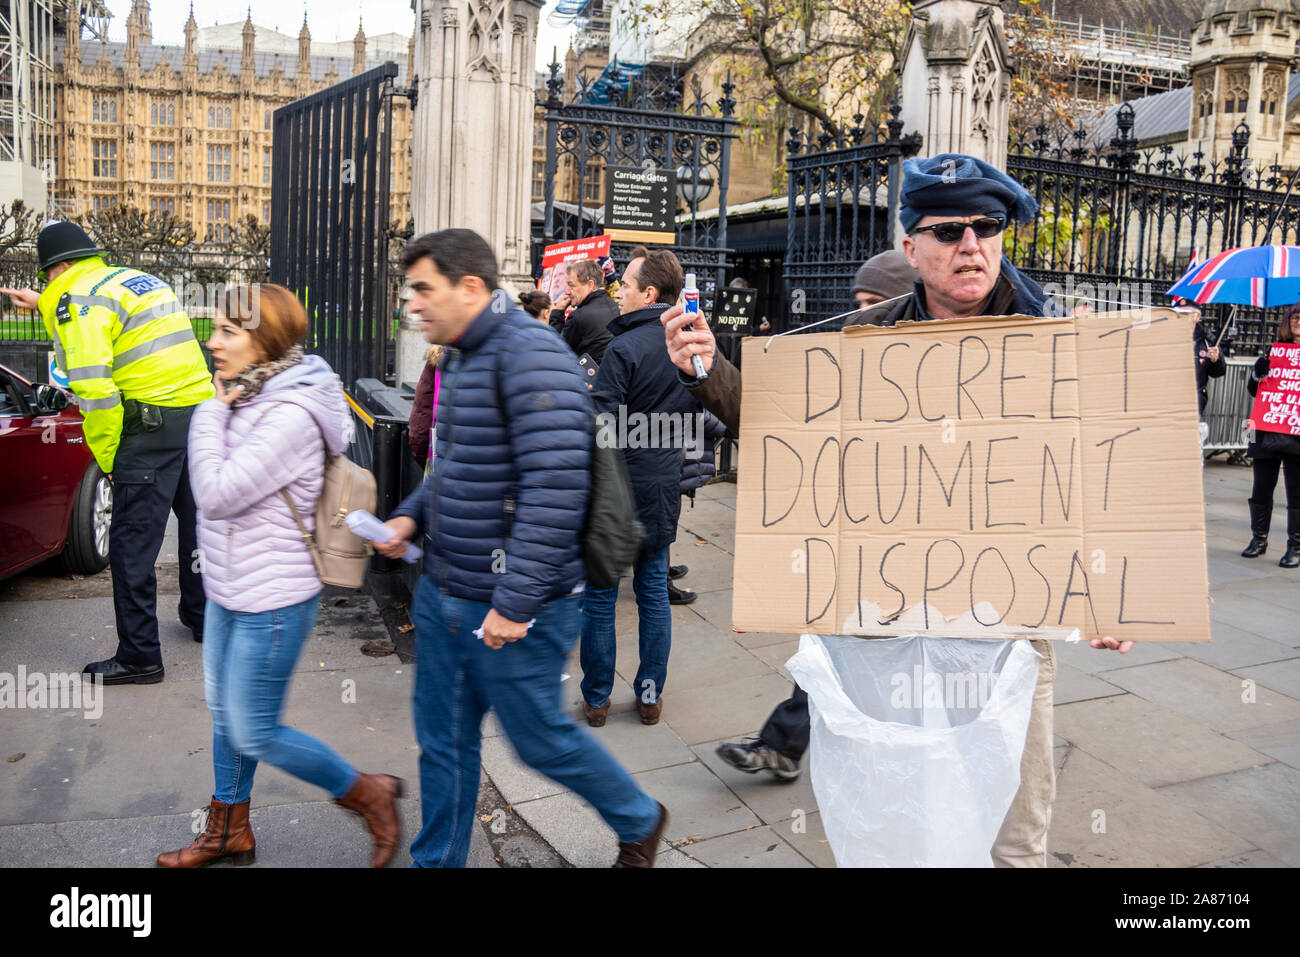 Demonstrant außerhalb des Parlaments mit Schild, diskrete Dokument Entsorgung in bezug auf die PM beschuldigt, Cover-up über Bericht über russische Einmischung in Großbritannien Stockfoto